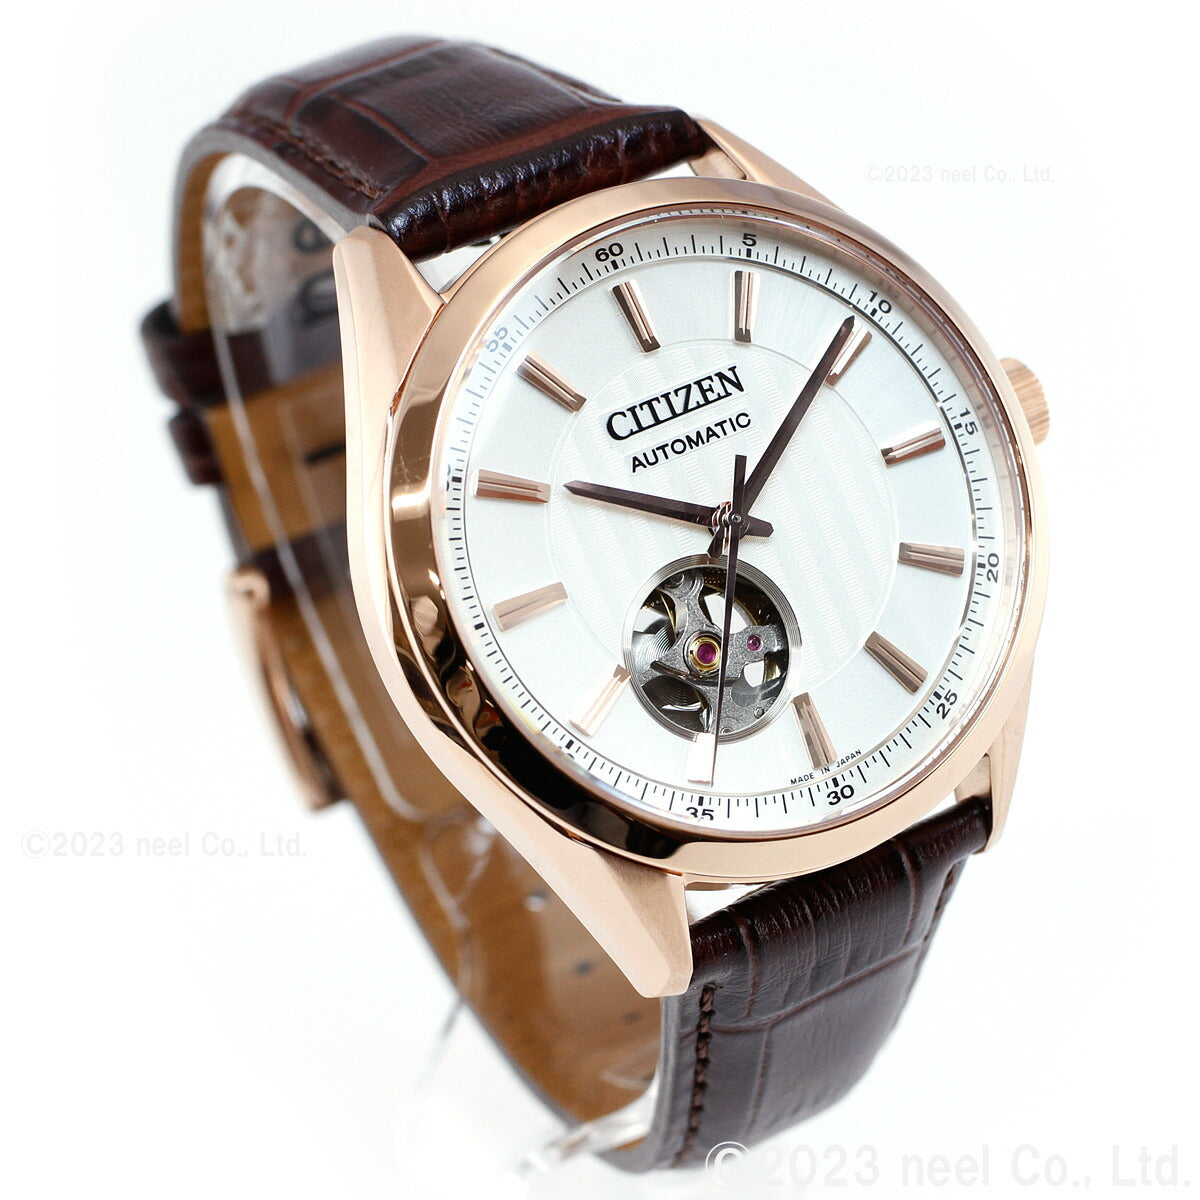 シチズンコレクション CITIZEN COLLECTION メカニカル 自動巻き 機械式 腕時計 メンズ NH9112-19A